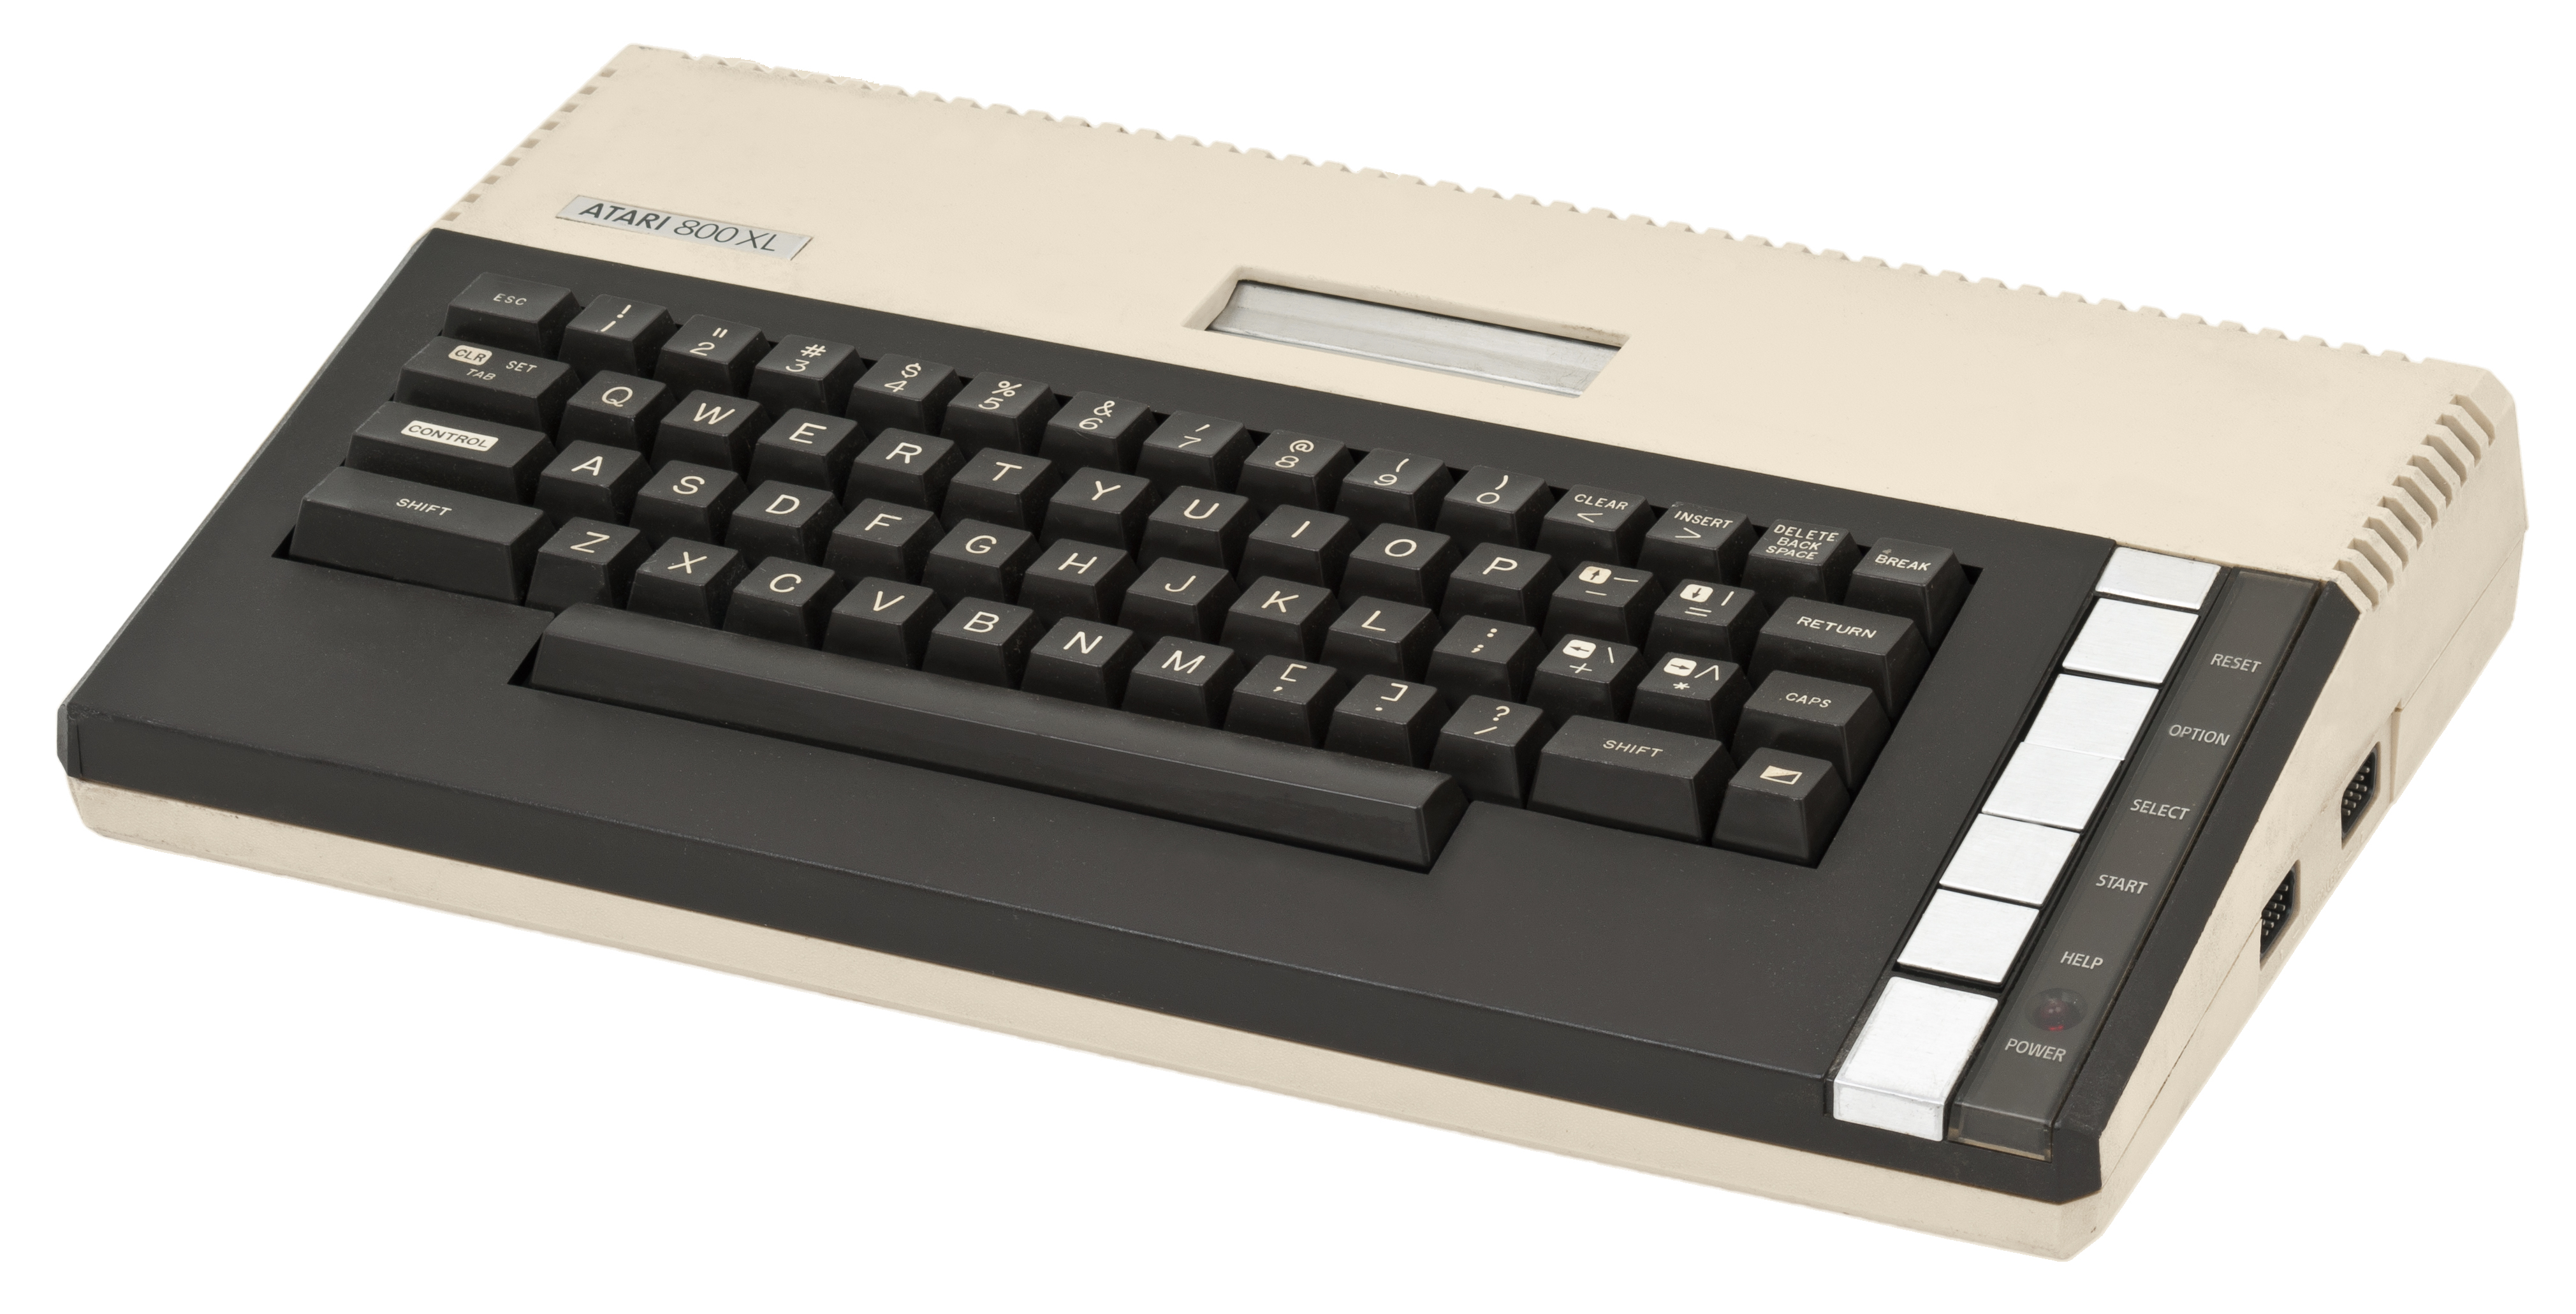 Na zdjęciu Atari 800XL, jeden z najpopularniejszych modeli w Polsce lat 80.